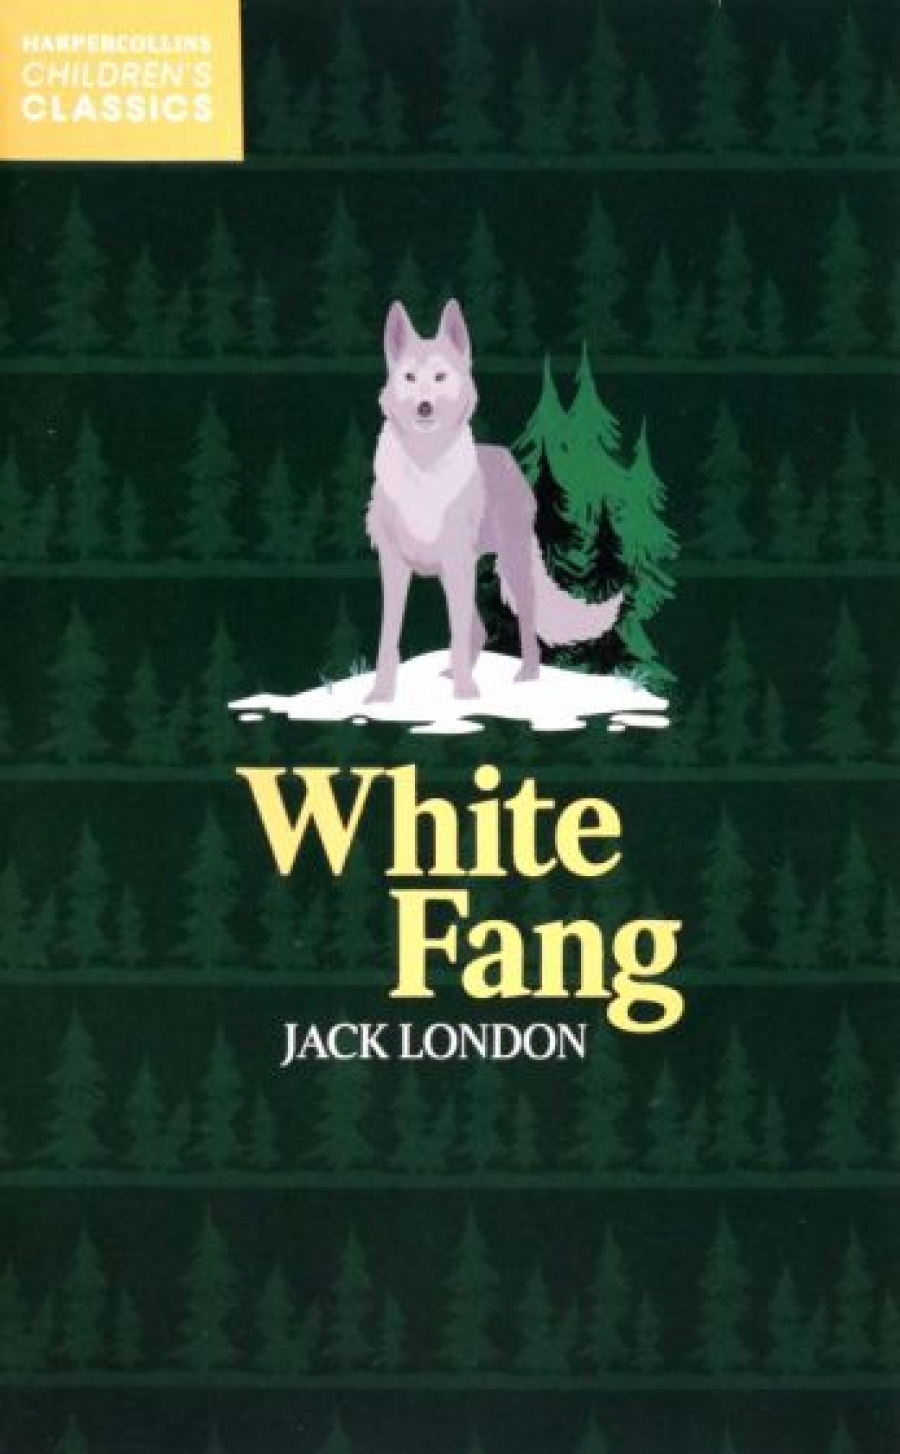 London Jack White Fang 